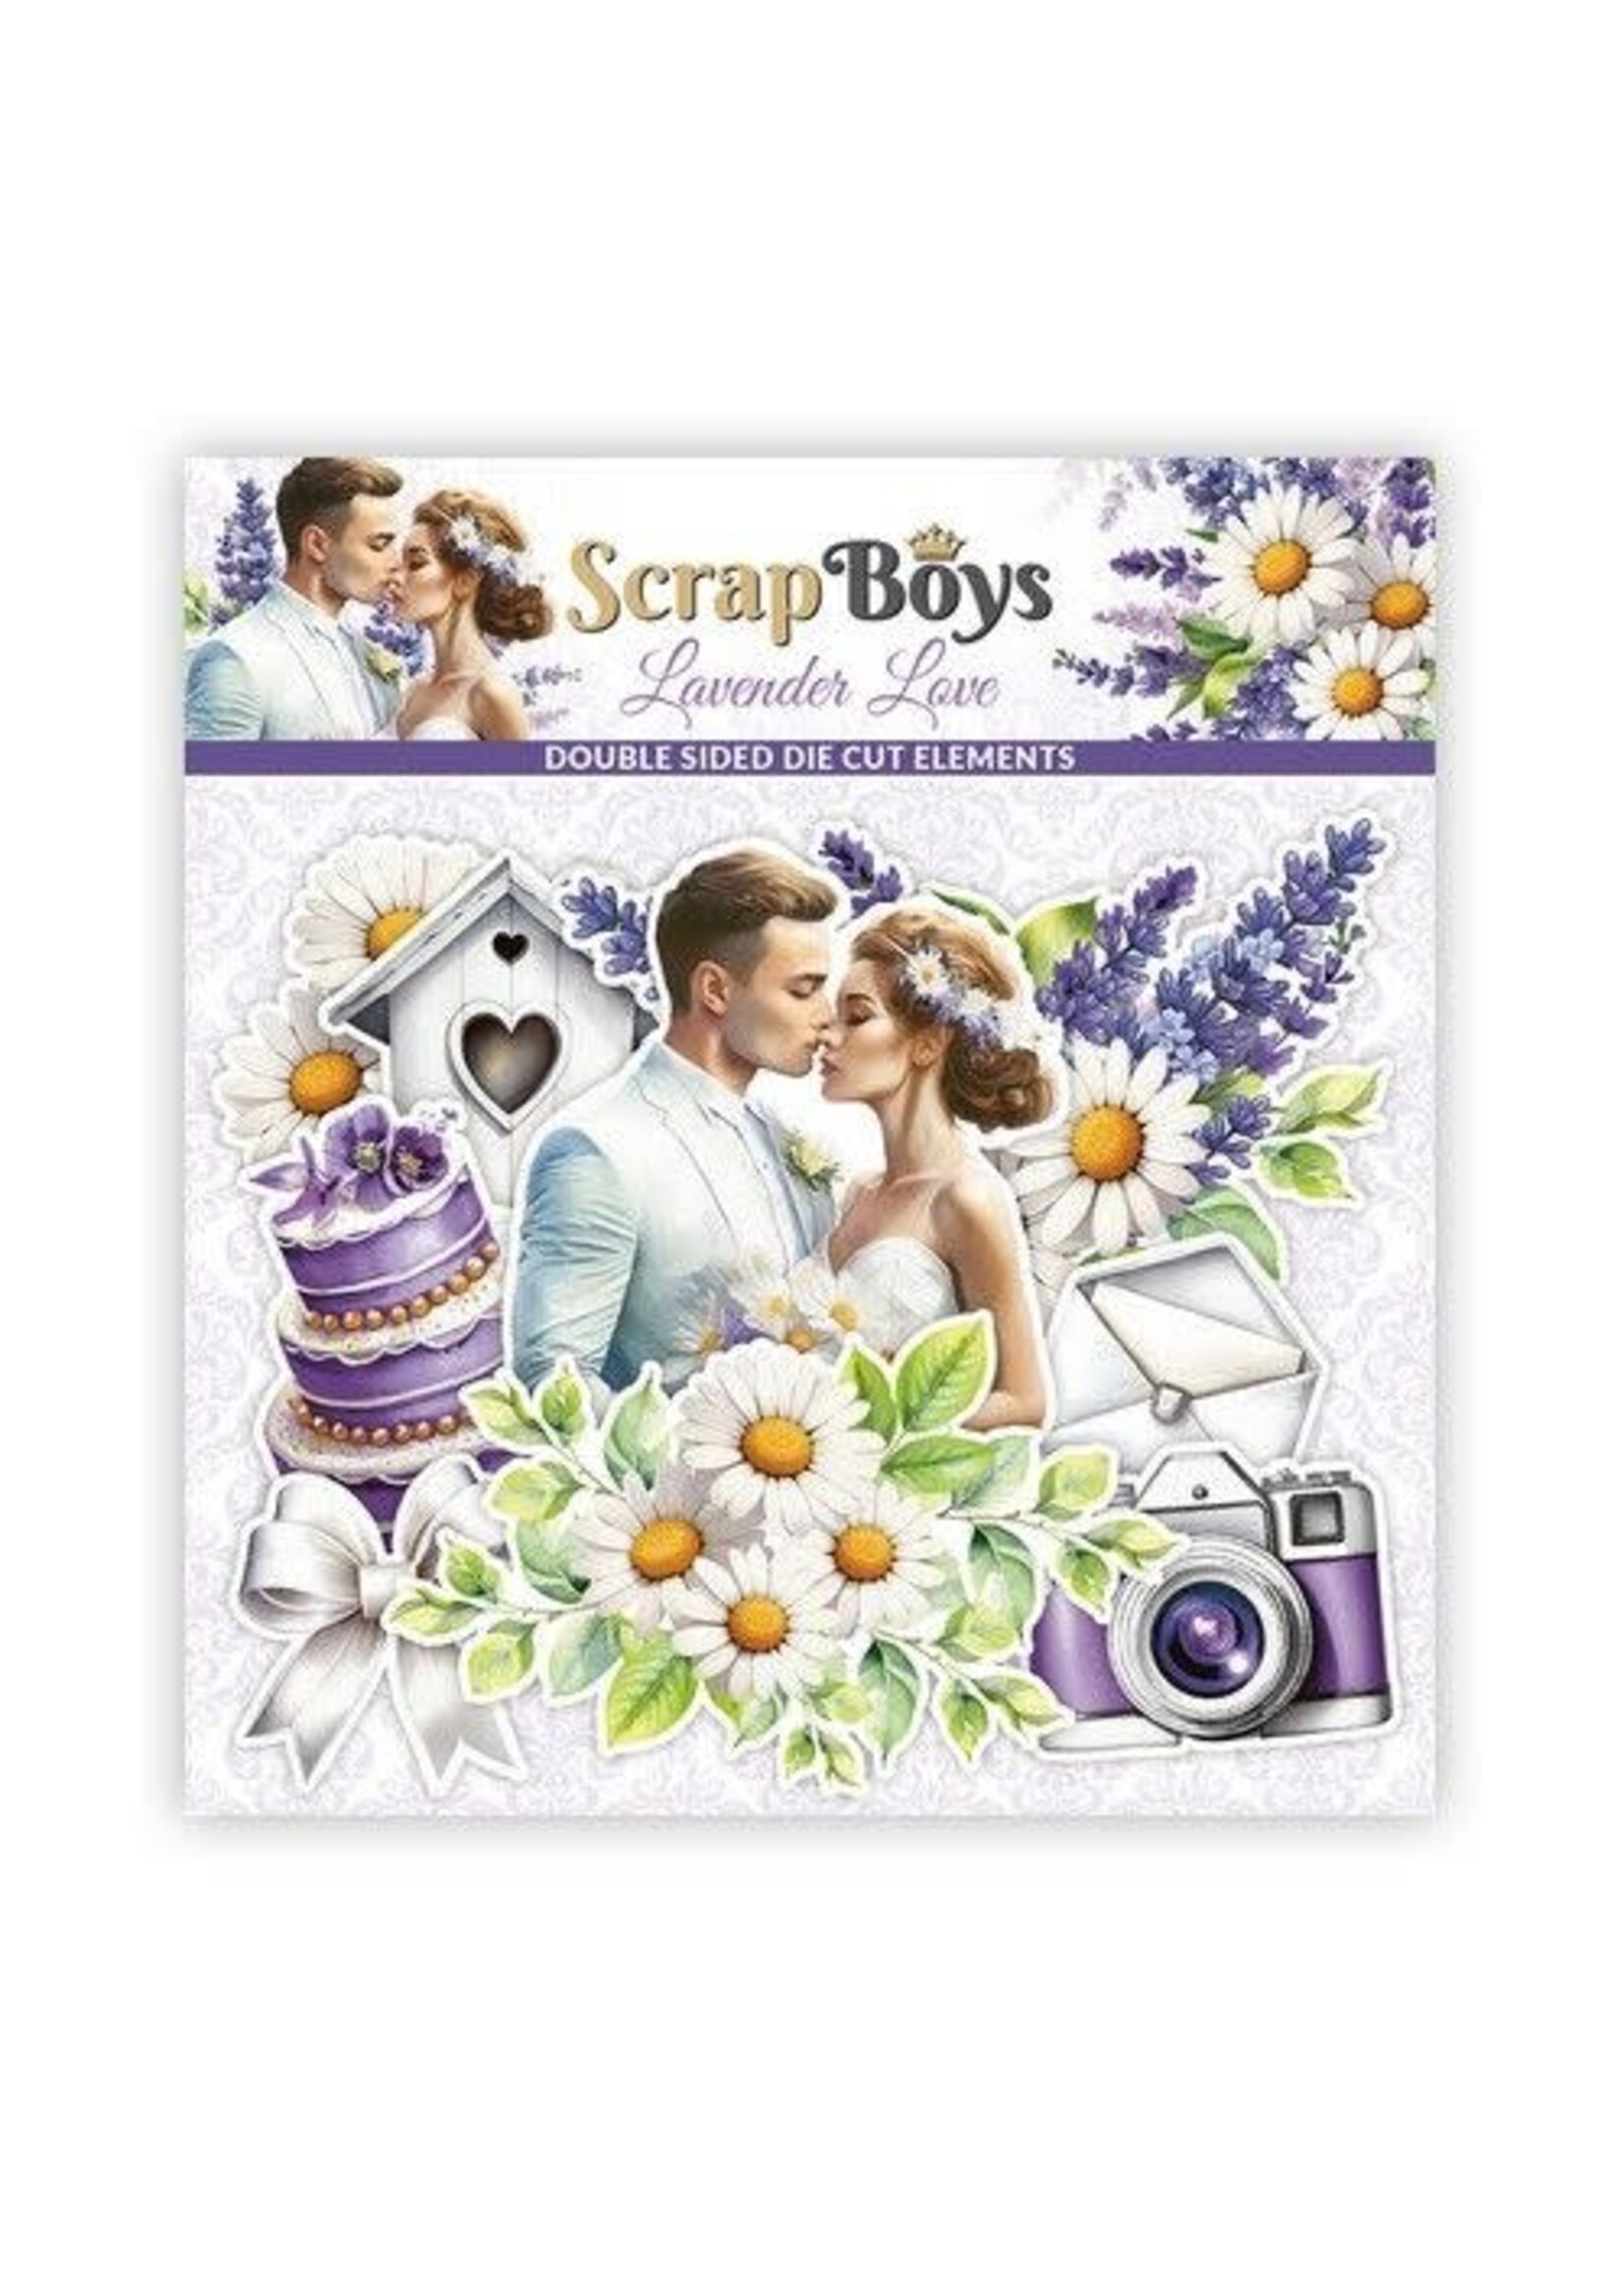 ScrapBoys Lavender Love Day Die cut elements SB-LALO-12 250gr 47pcs